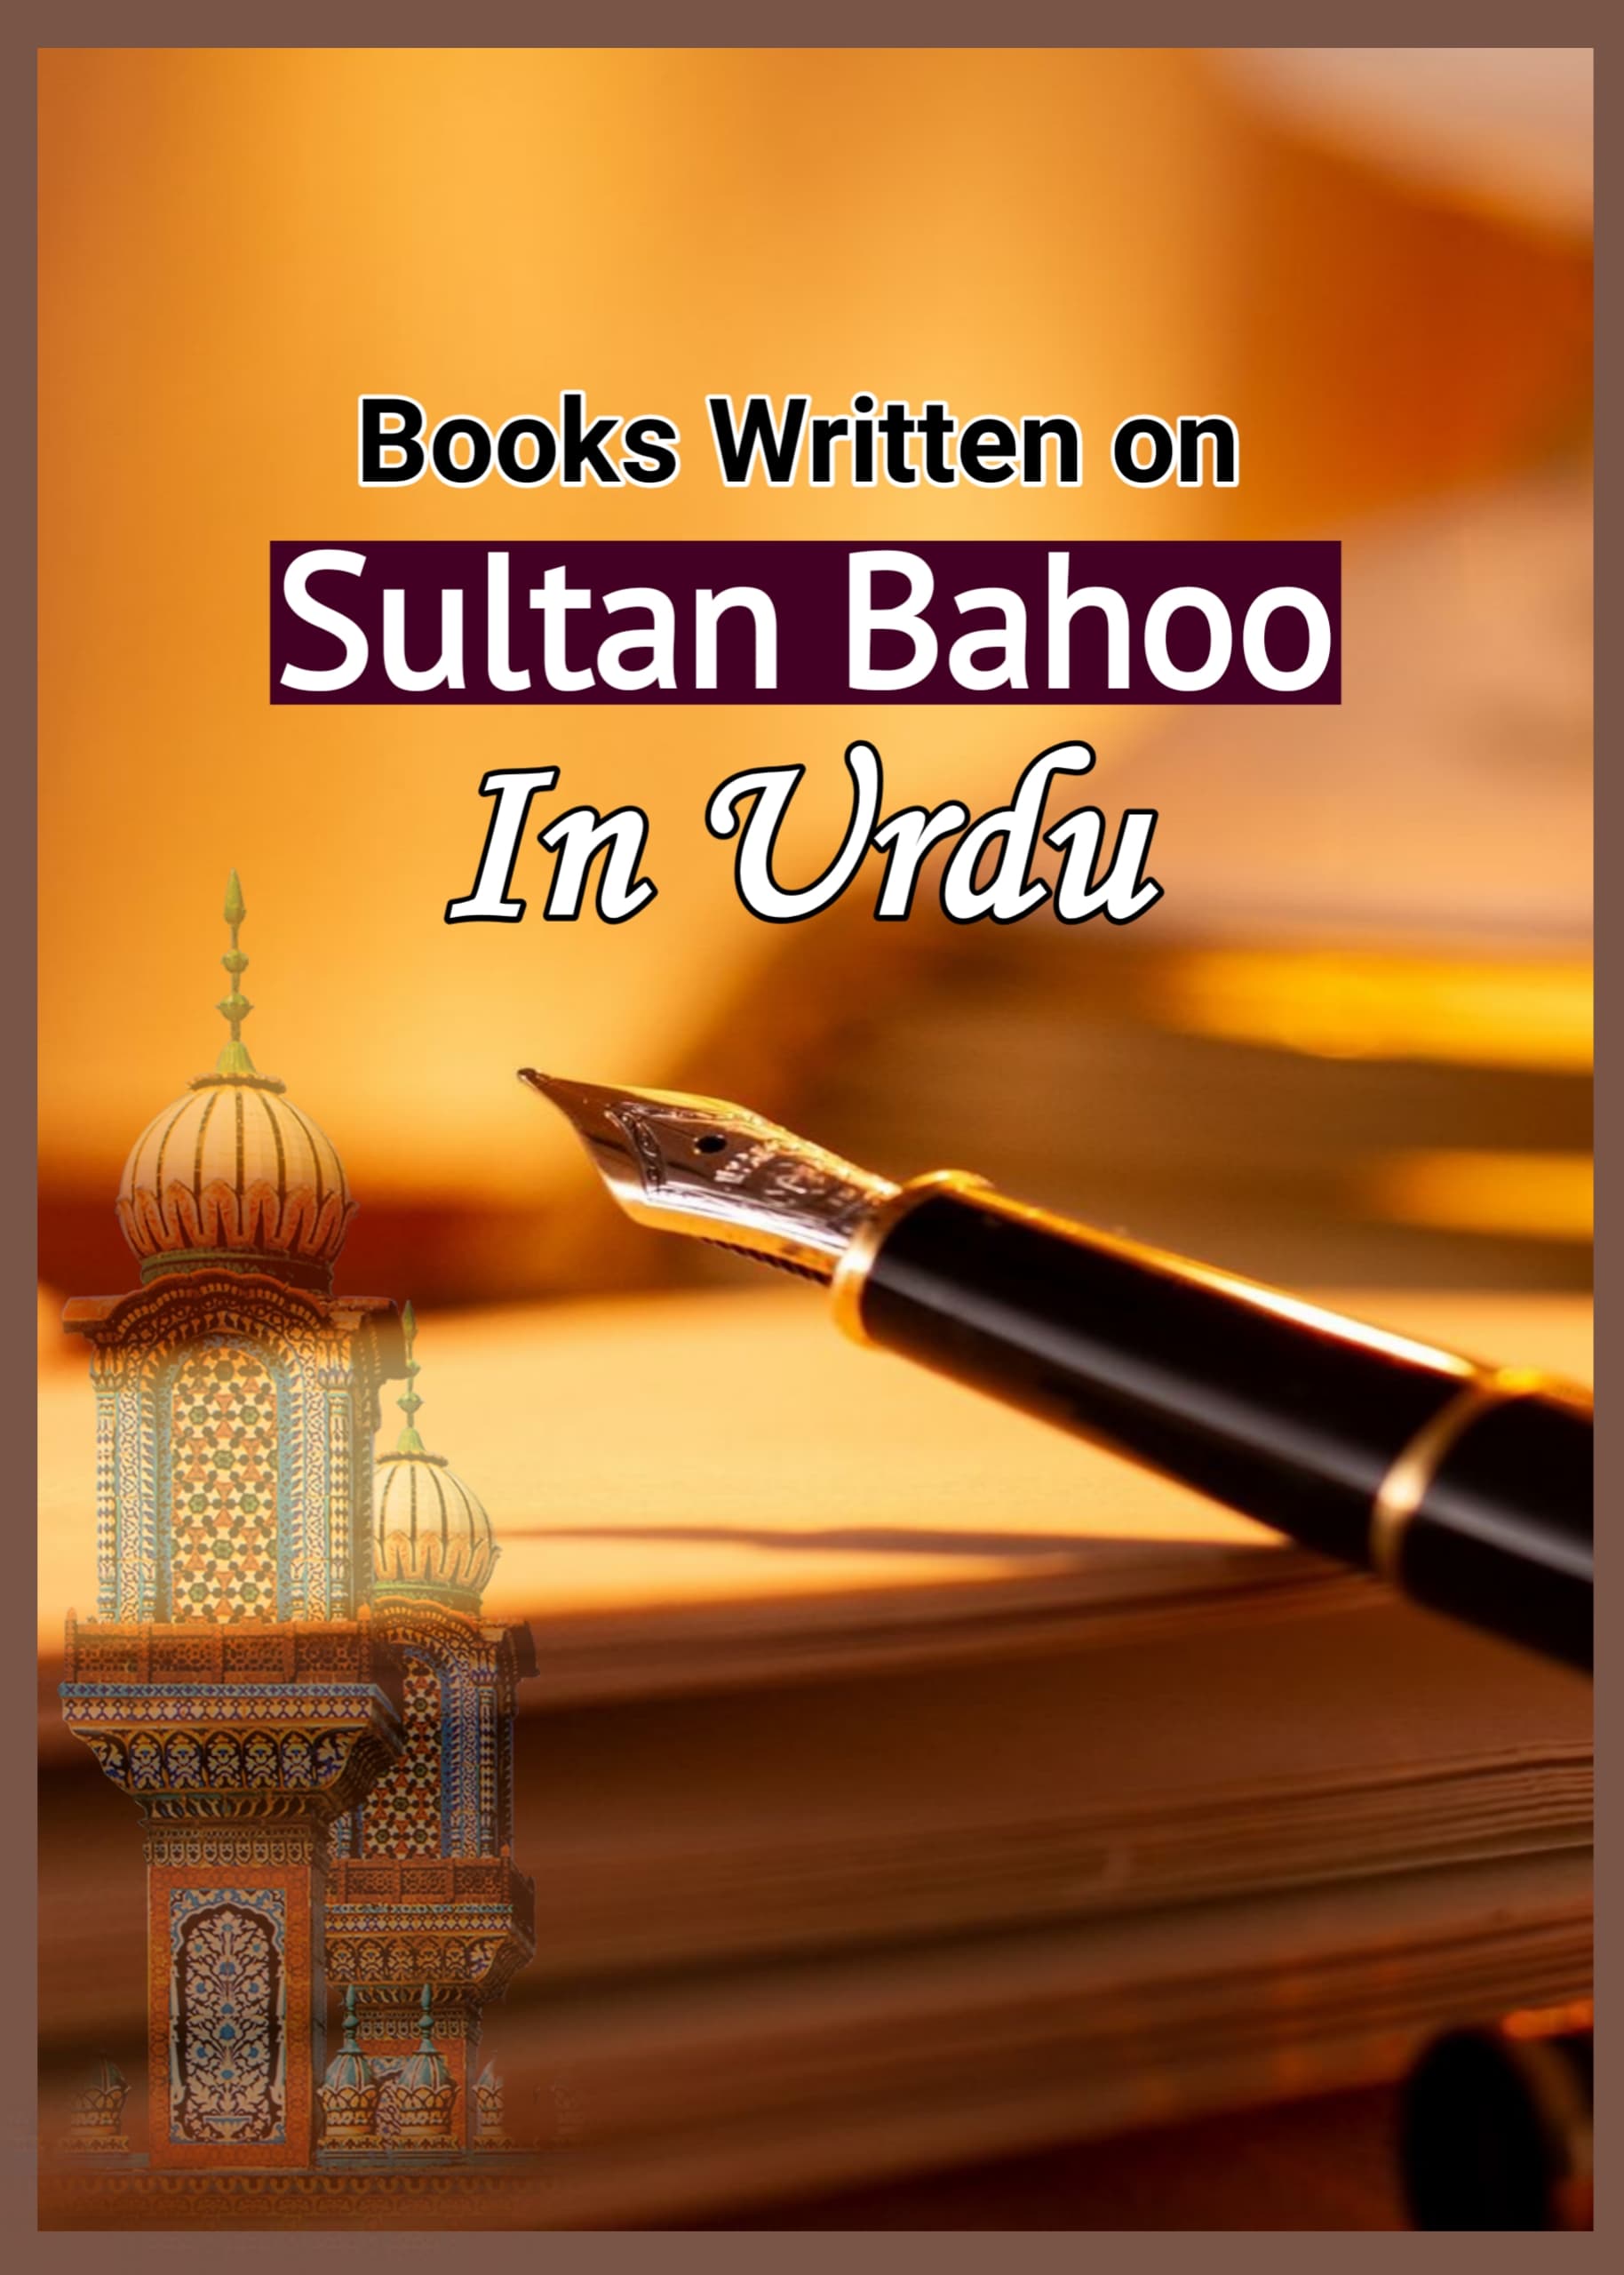 books written on Sultan Bahoo in Urdu